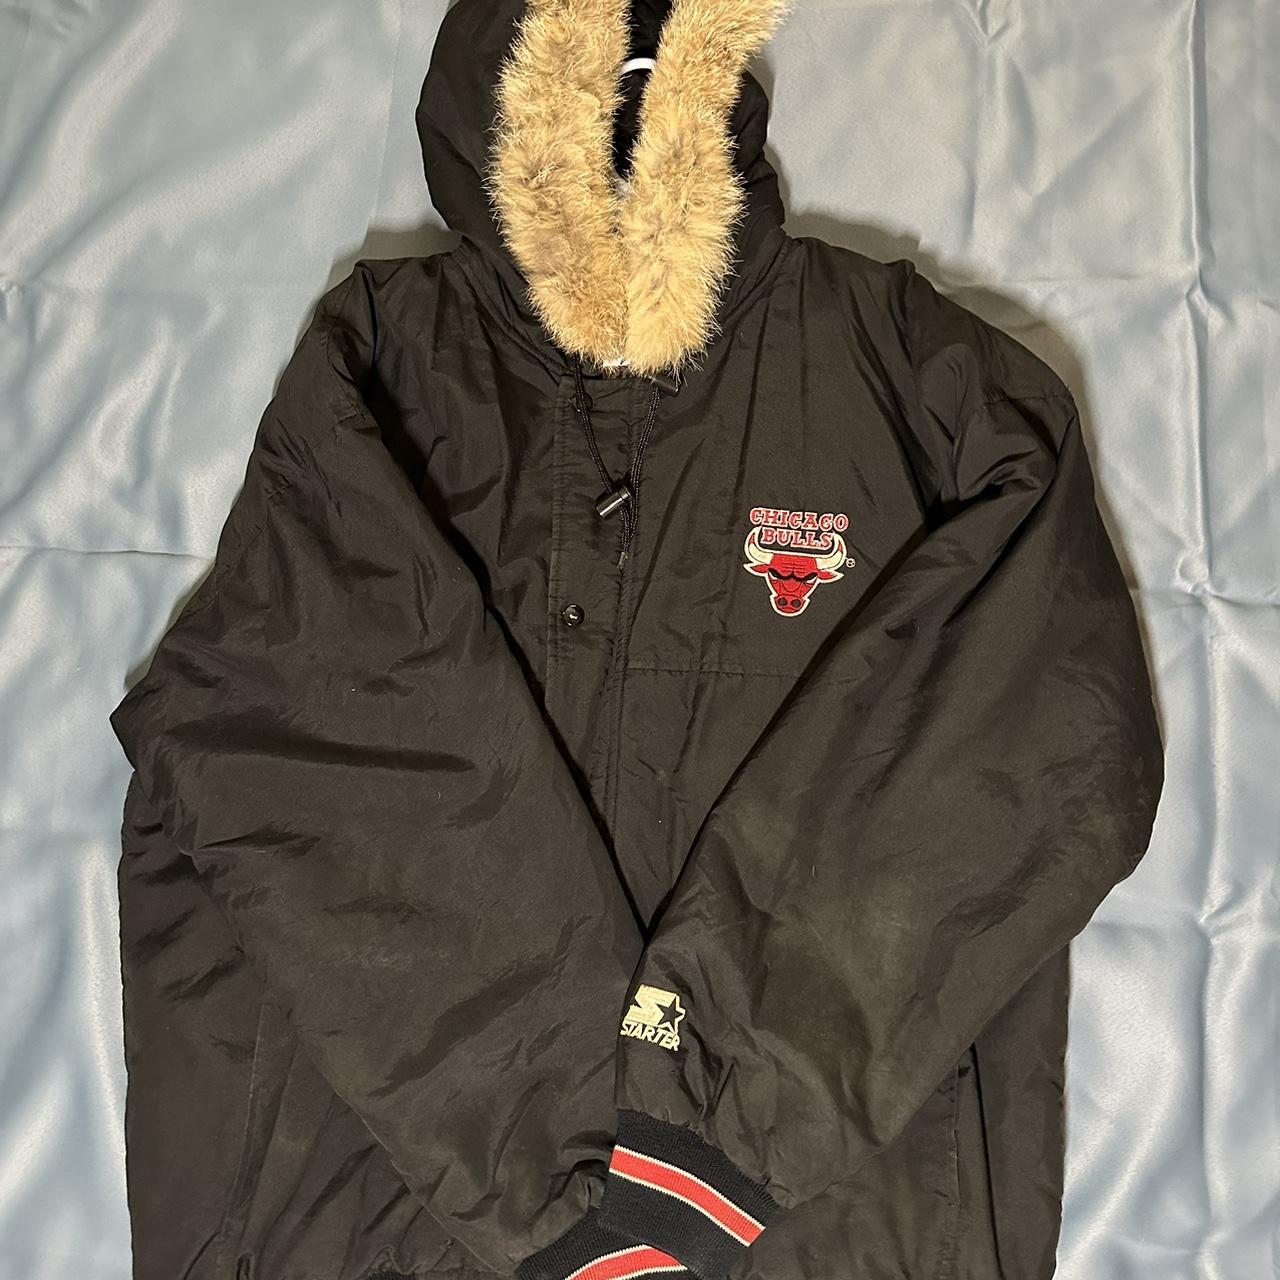 Vintage Chicago Bulls Starter Jacket. Cool jacket - Depop